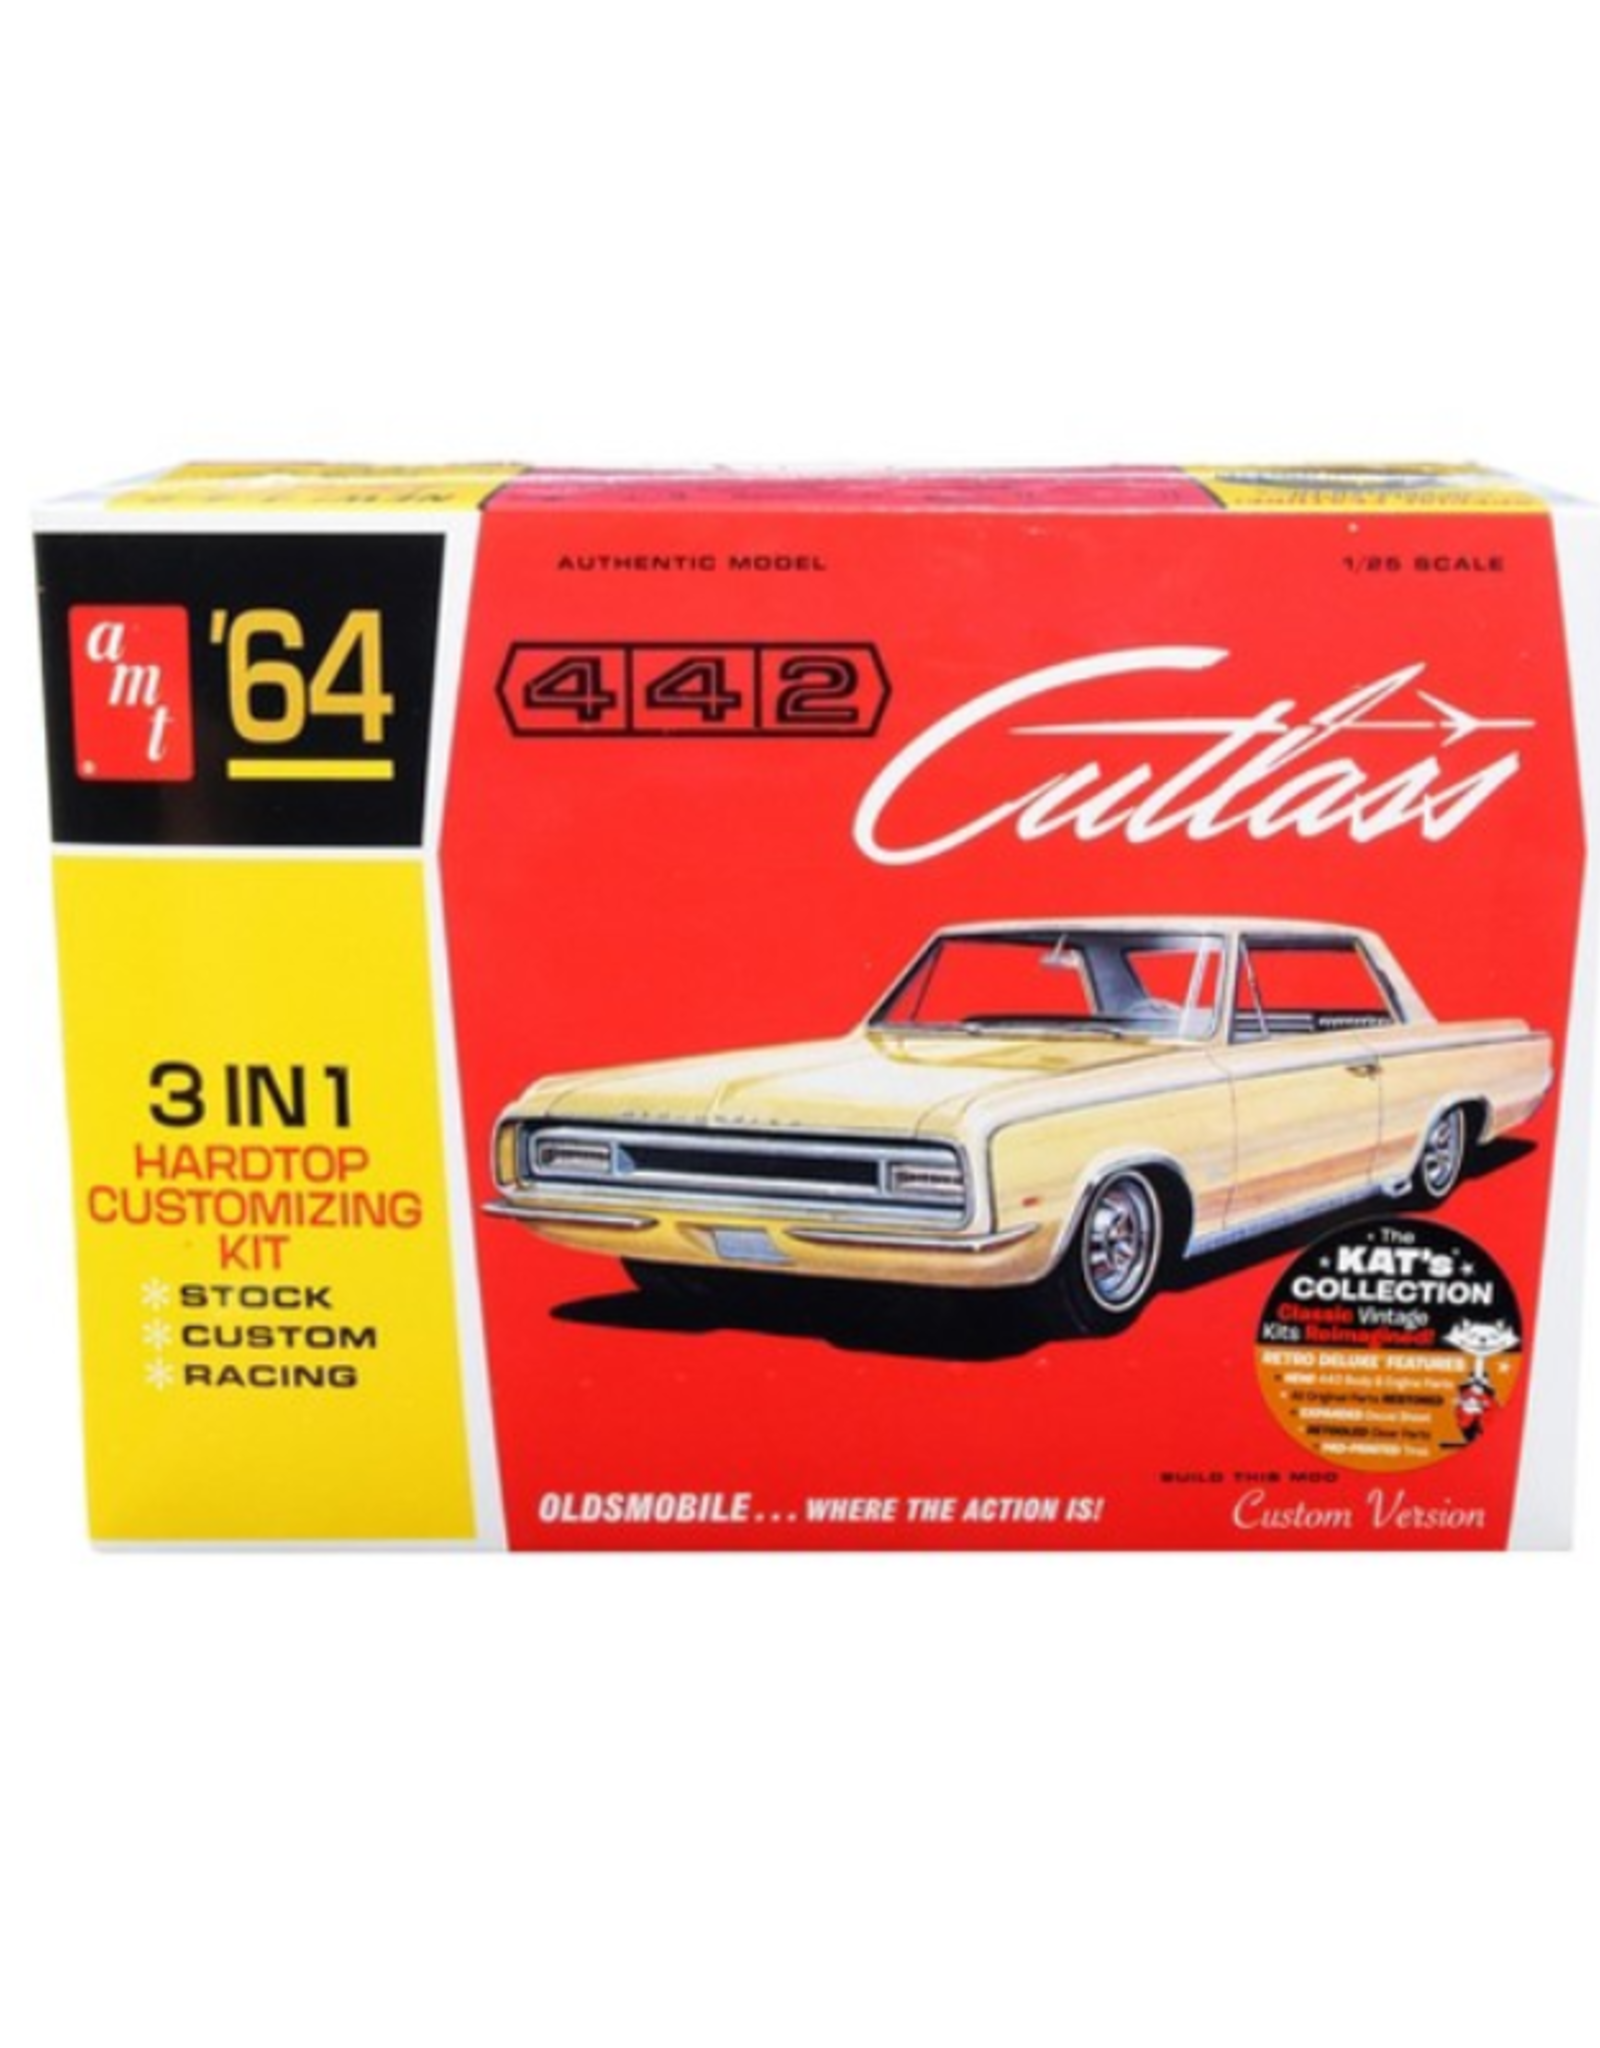 1964 Oldsmobile Cutlass 442 Hardtop 1:25